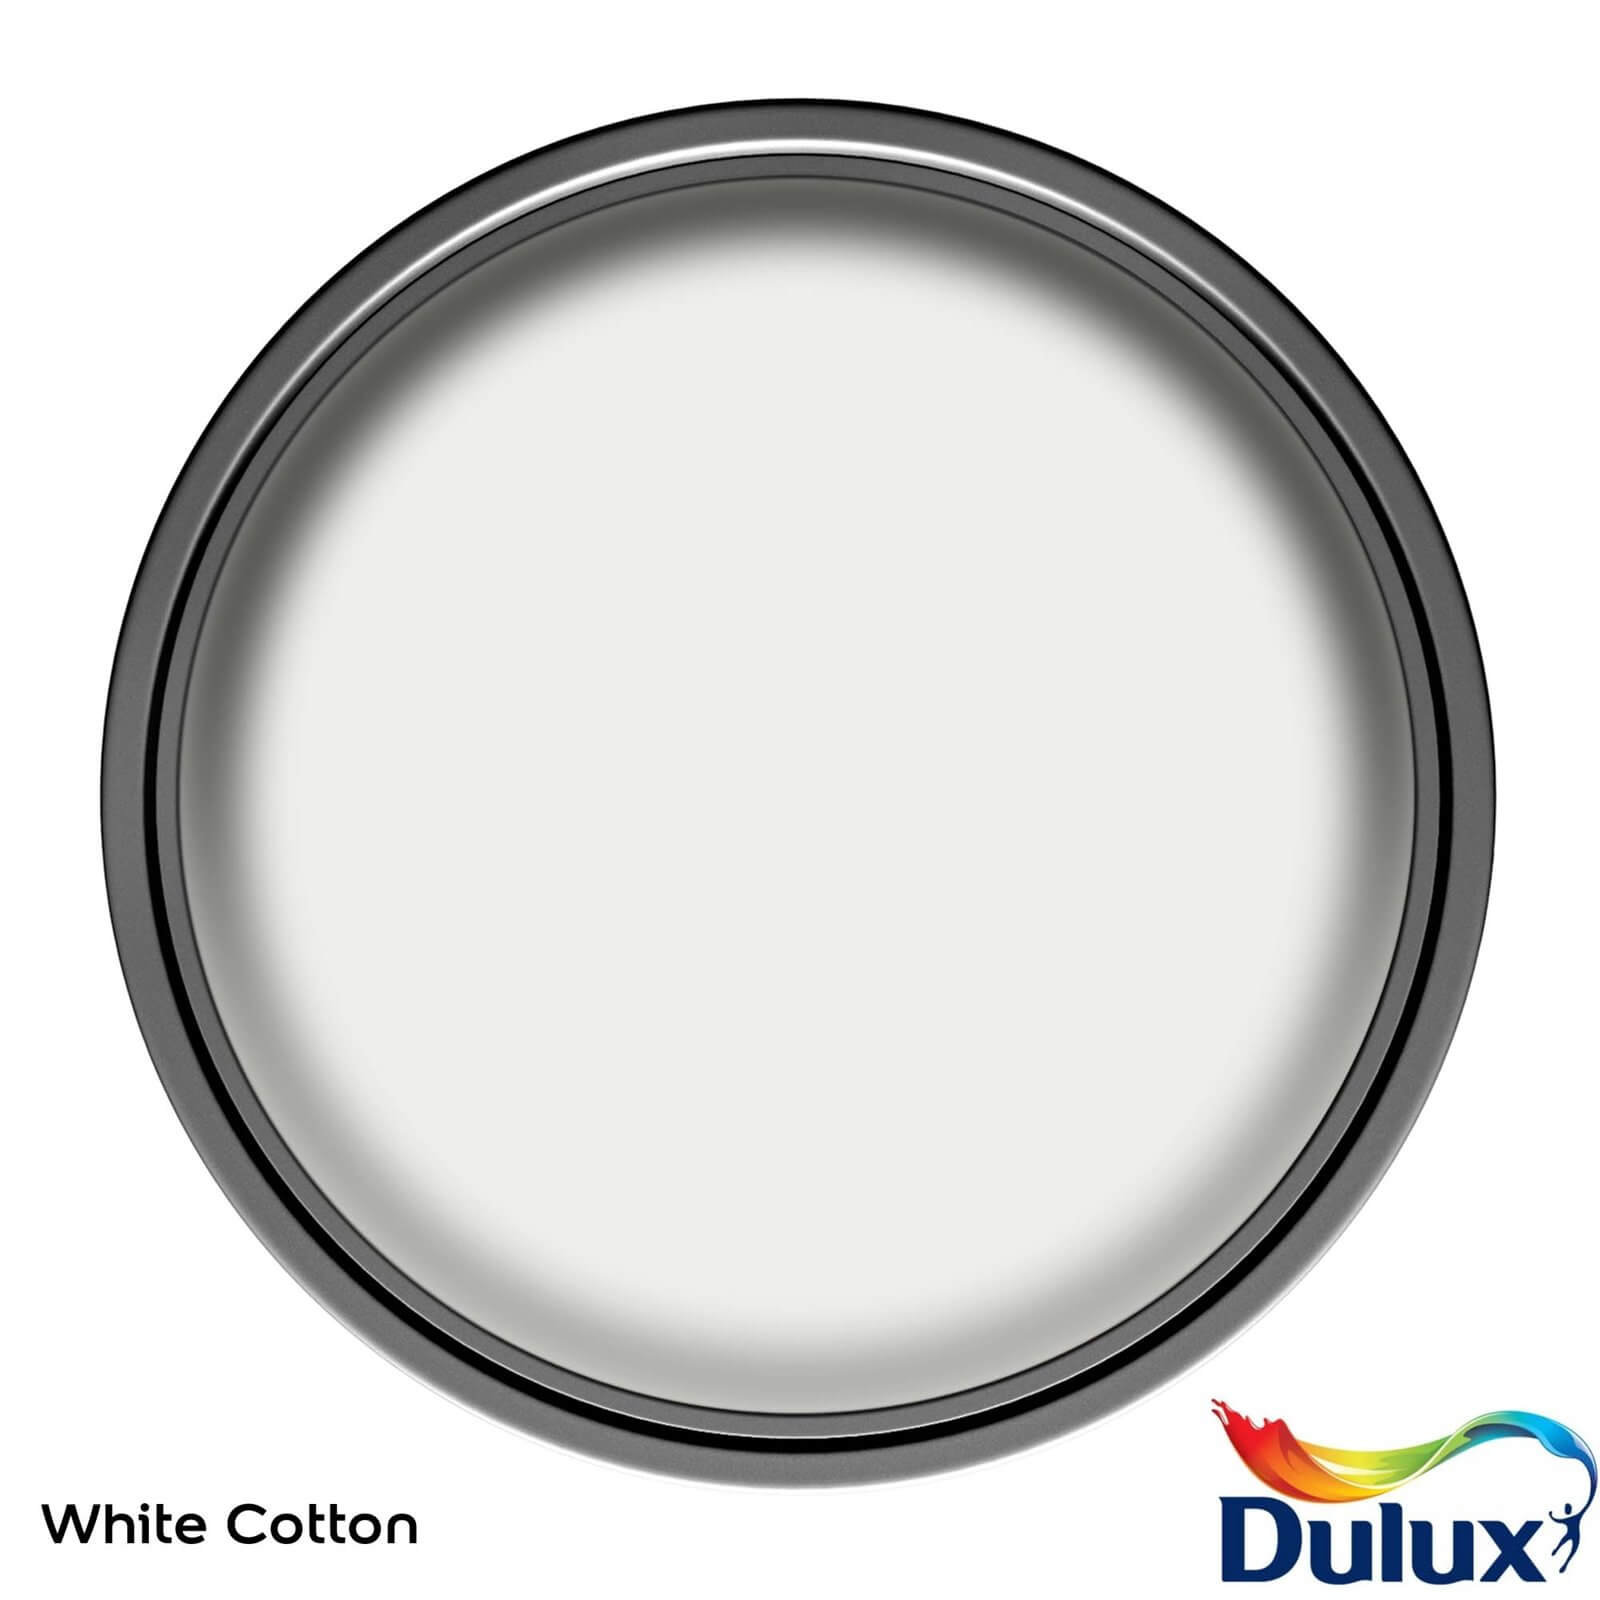 Dulux Easycare Washable & Tough Matt Paint White Cotton - 5L